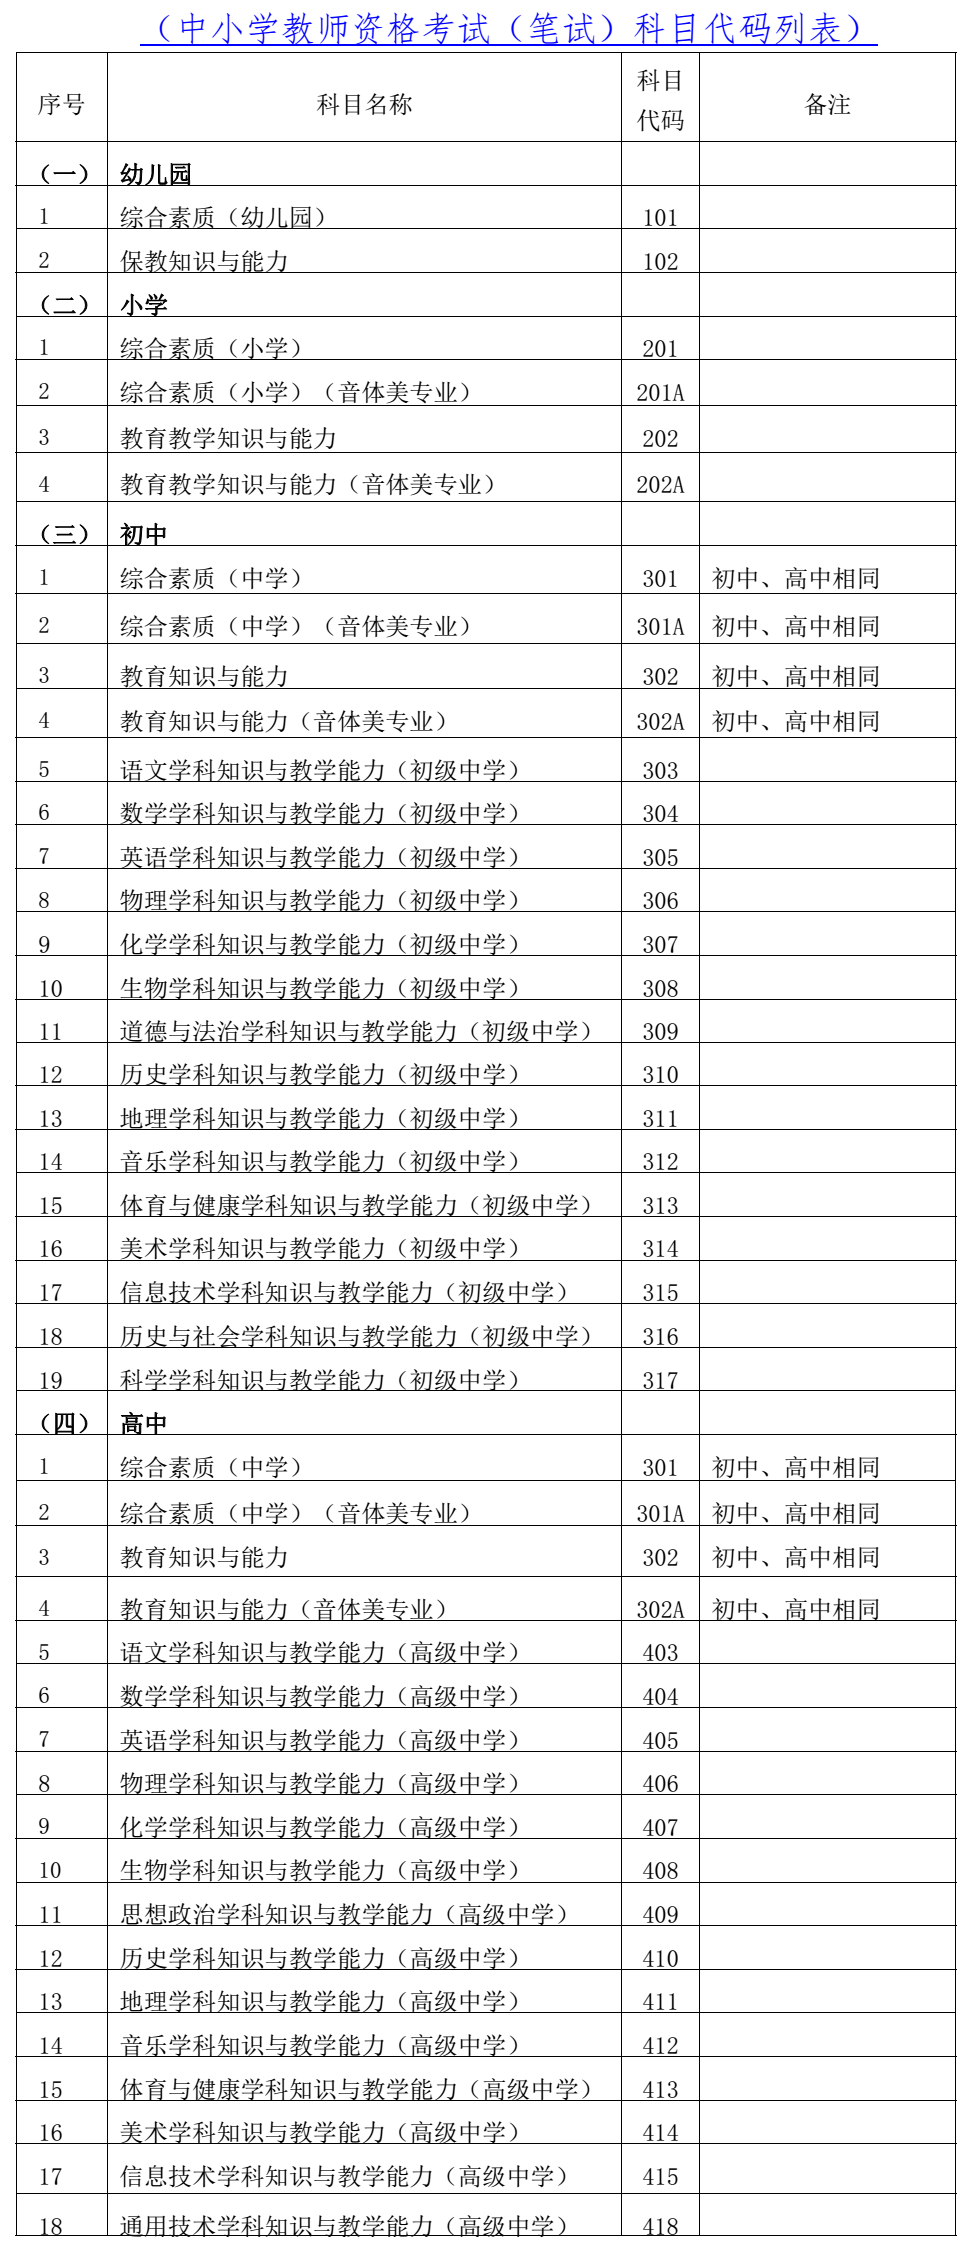 关于2021年下半年海南省中小学教师资格考试笔试报名的公告 